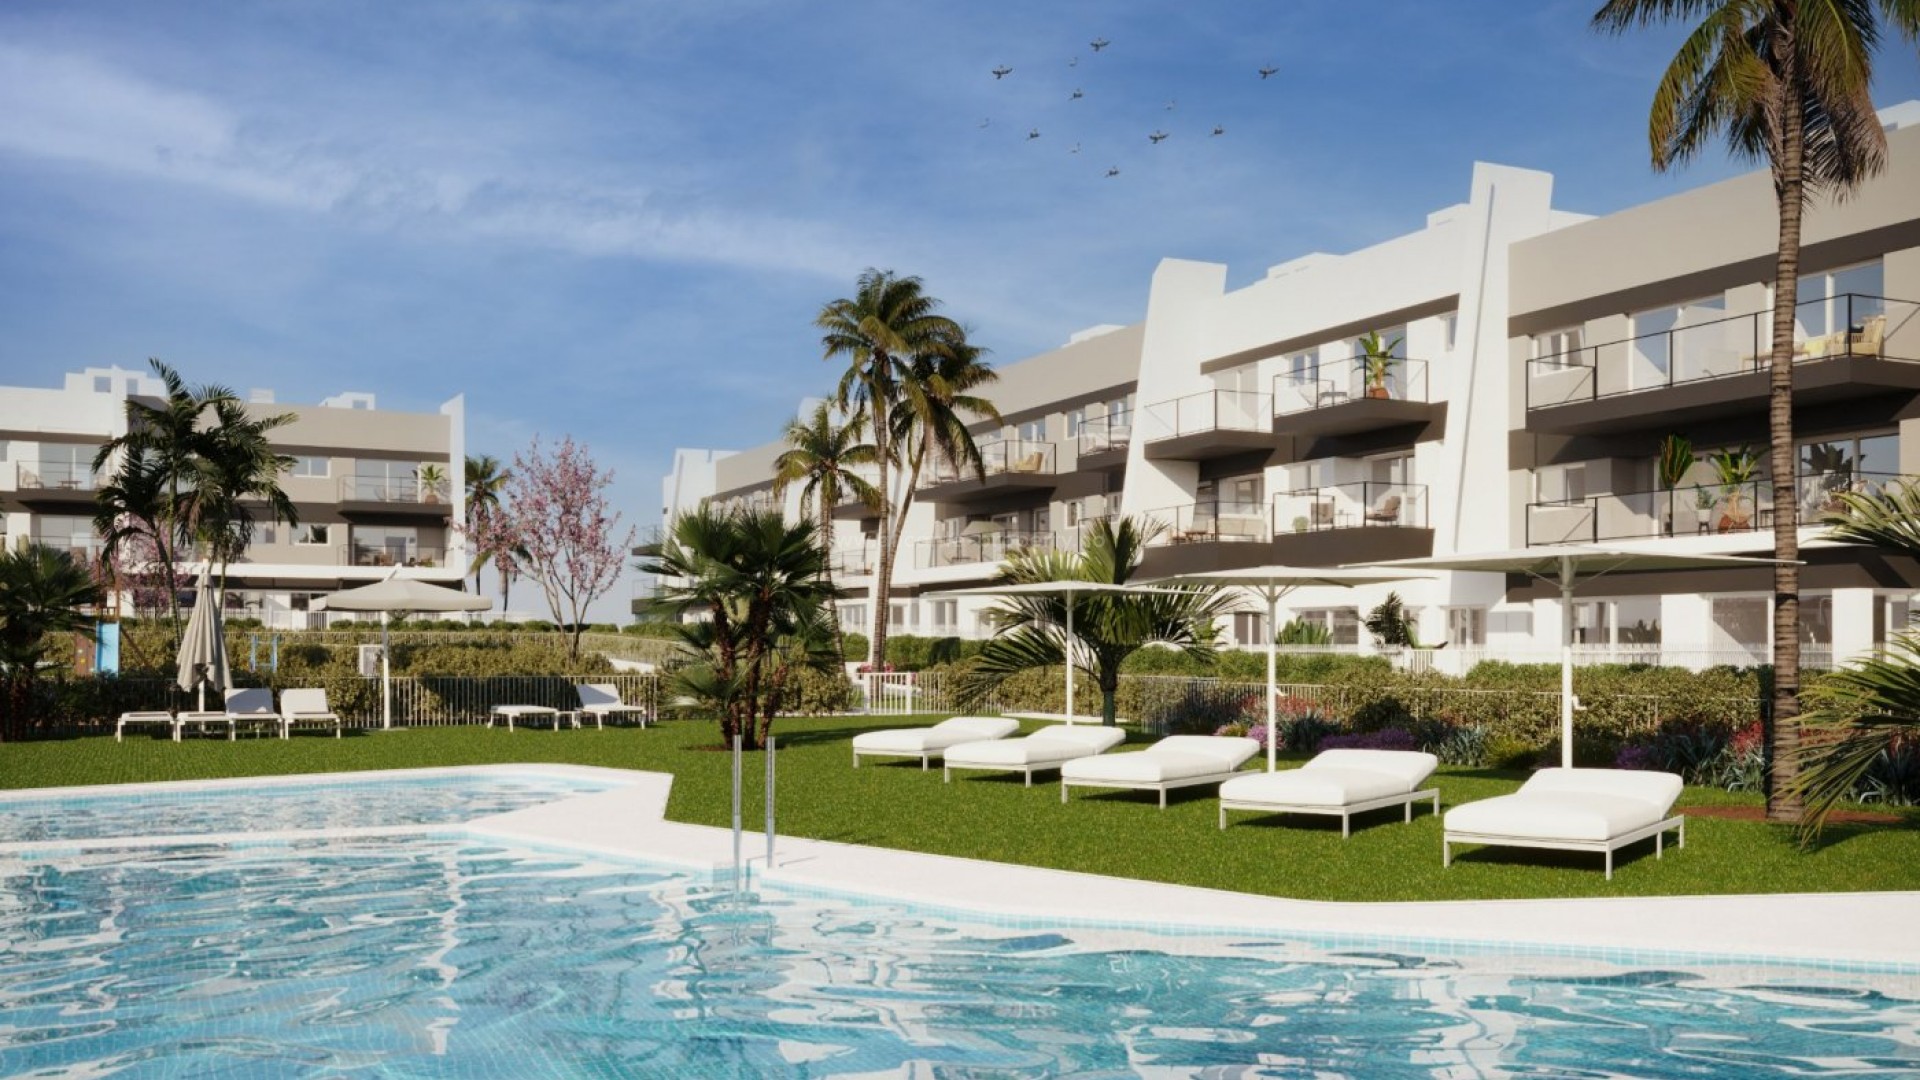 Nybyggde leiligheter i Gran Alacant, Santa Pola, 2/3 soverom, 2 bad, flott felles basseng, privat hage, utsikt over havet eller grønt område